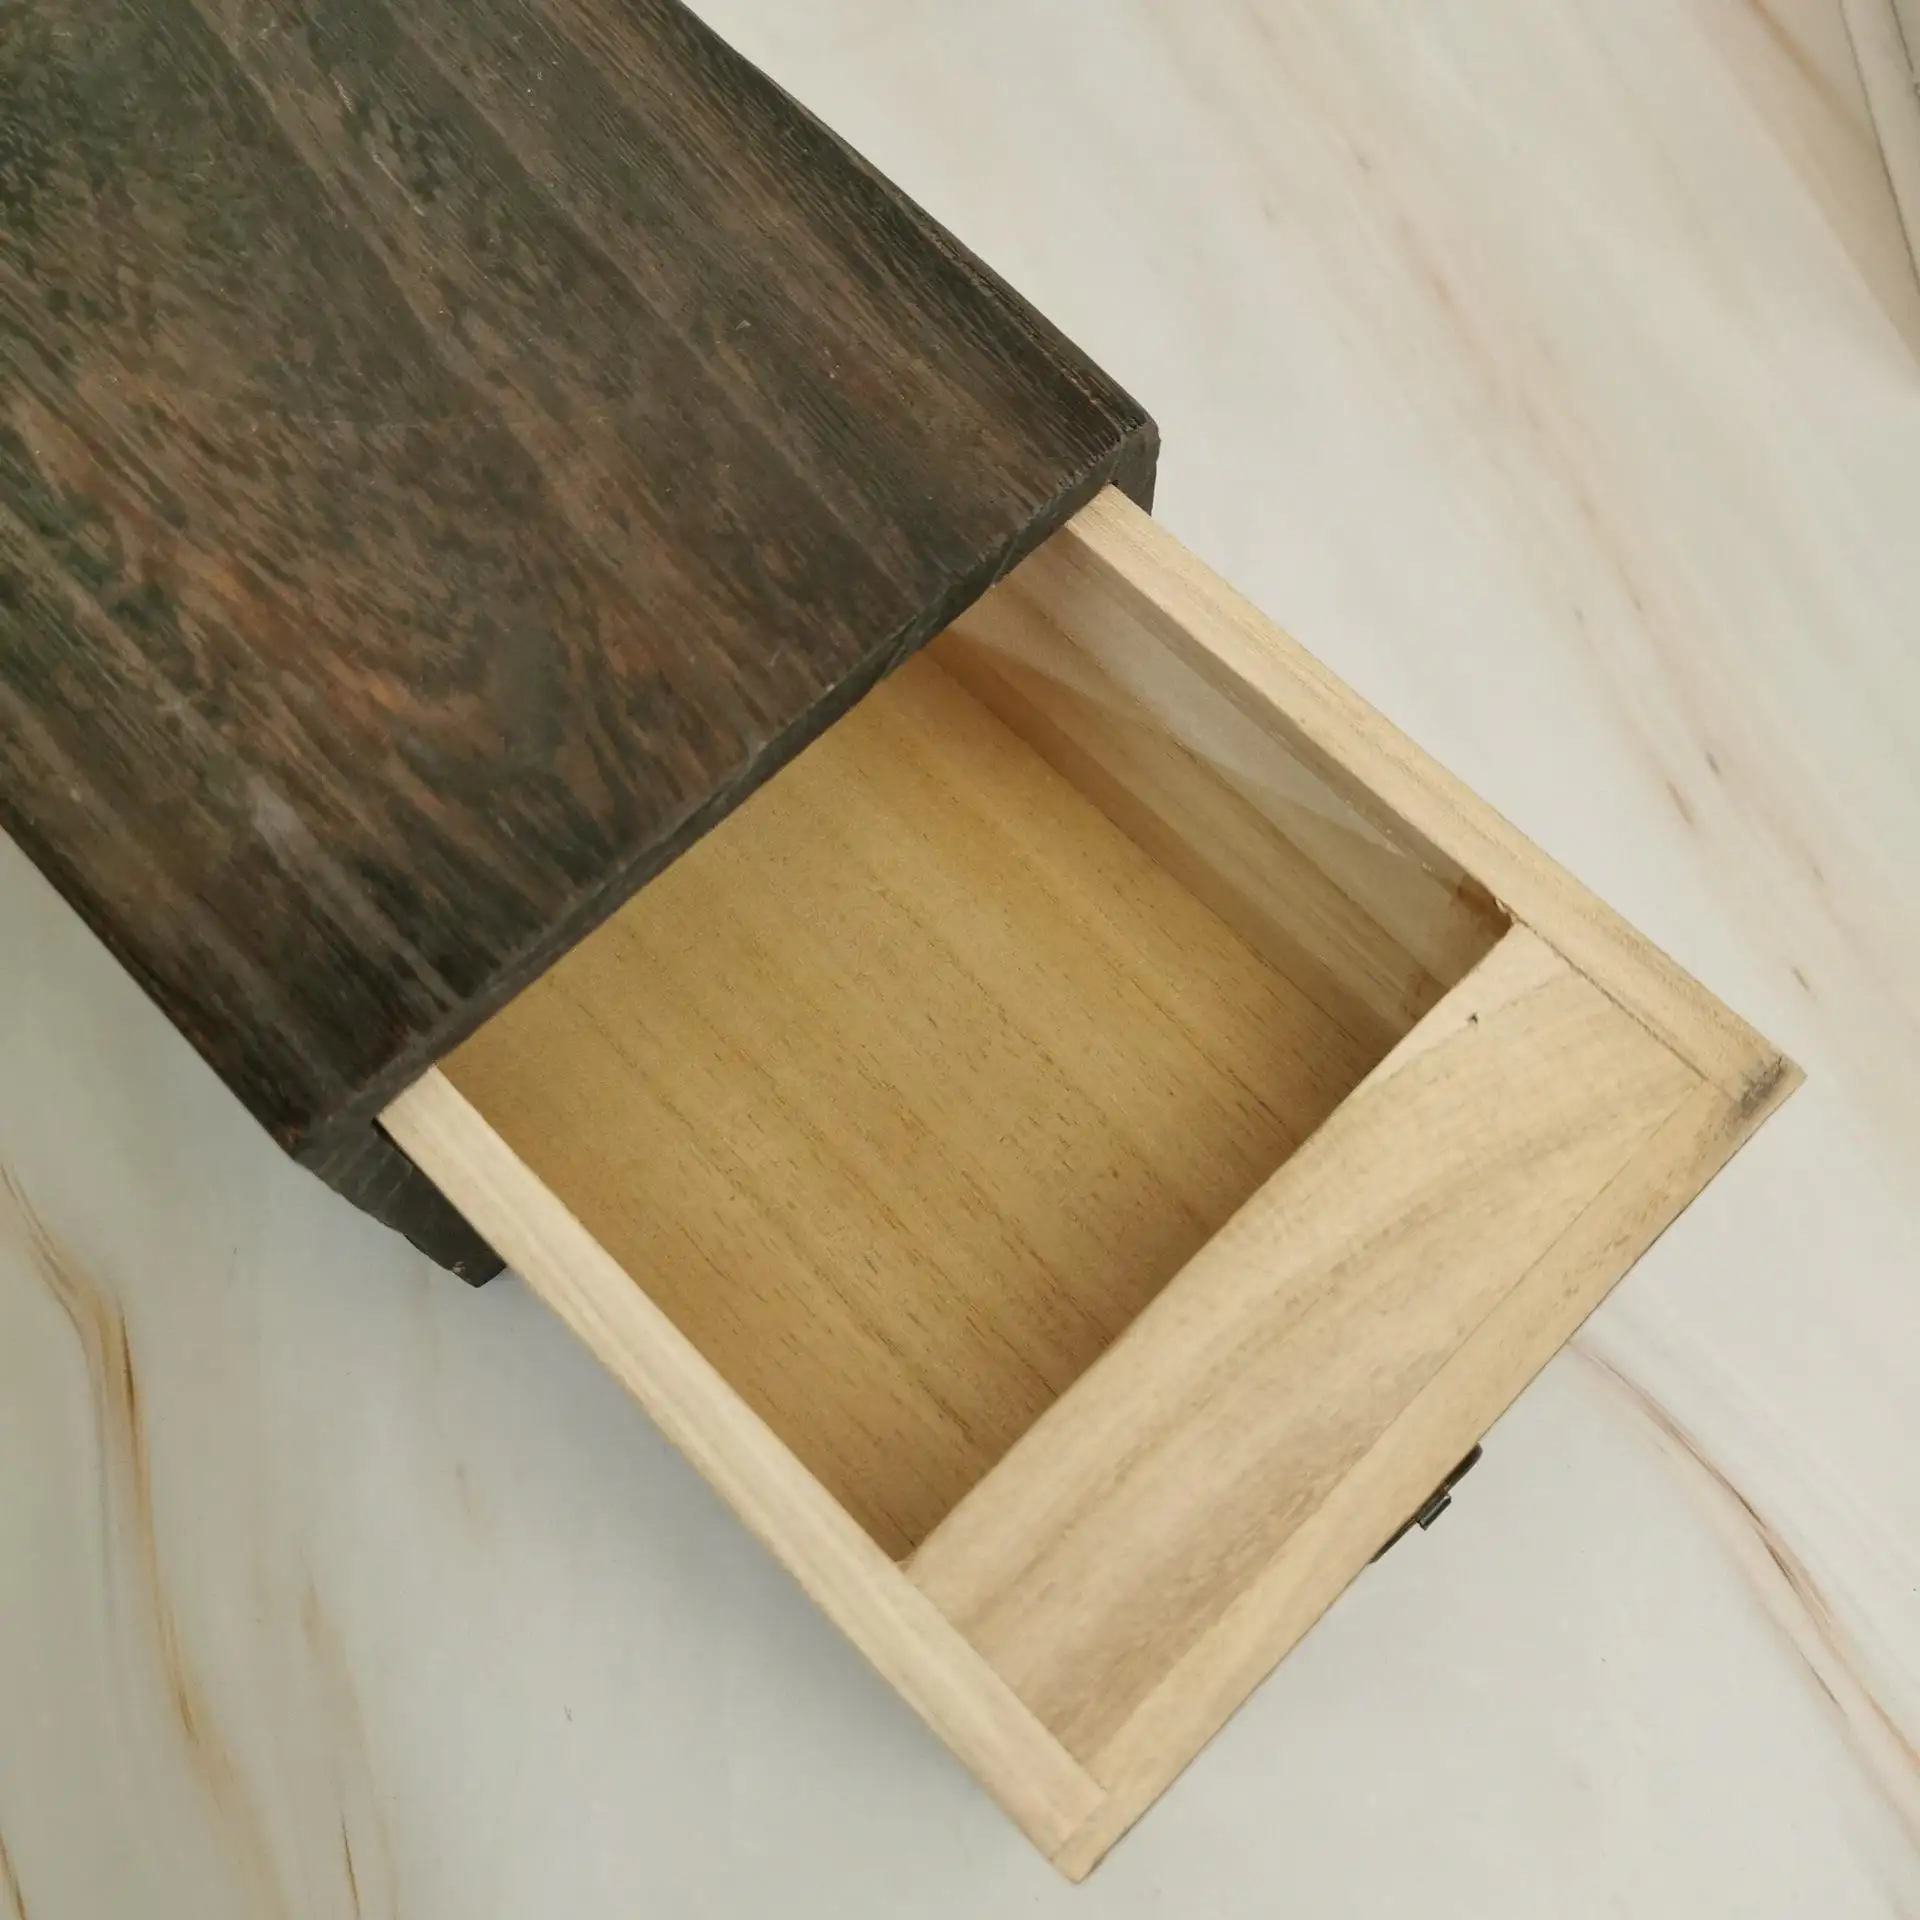 कला शिल्प आभूषण आयोजक के लिए प्राचीन ढक्कन के साथ लकड़ी का दराज केस आयताकार आकार का लकड़ी का चाय बॉक्स